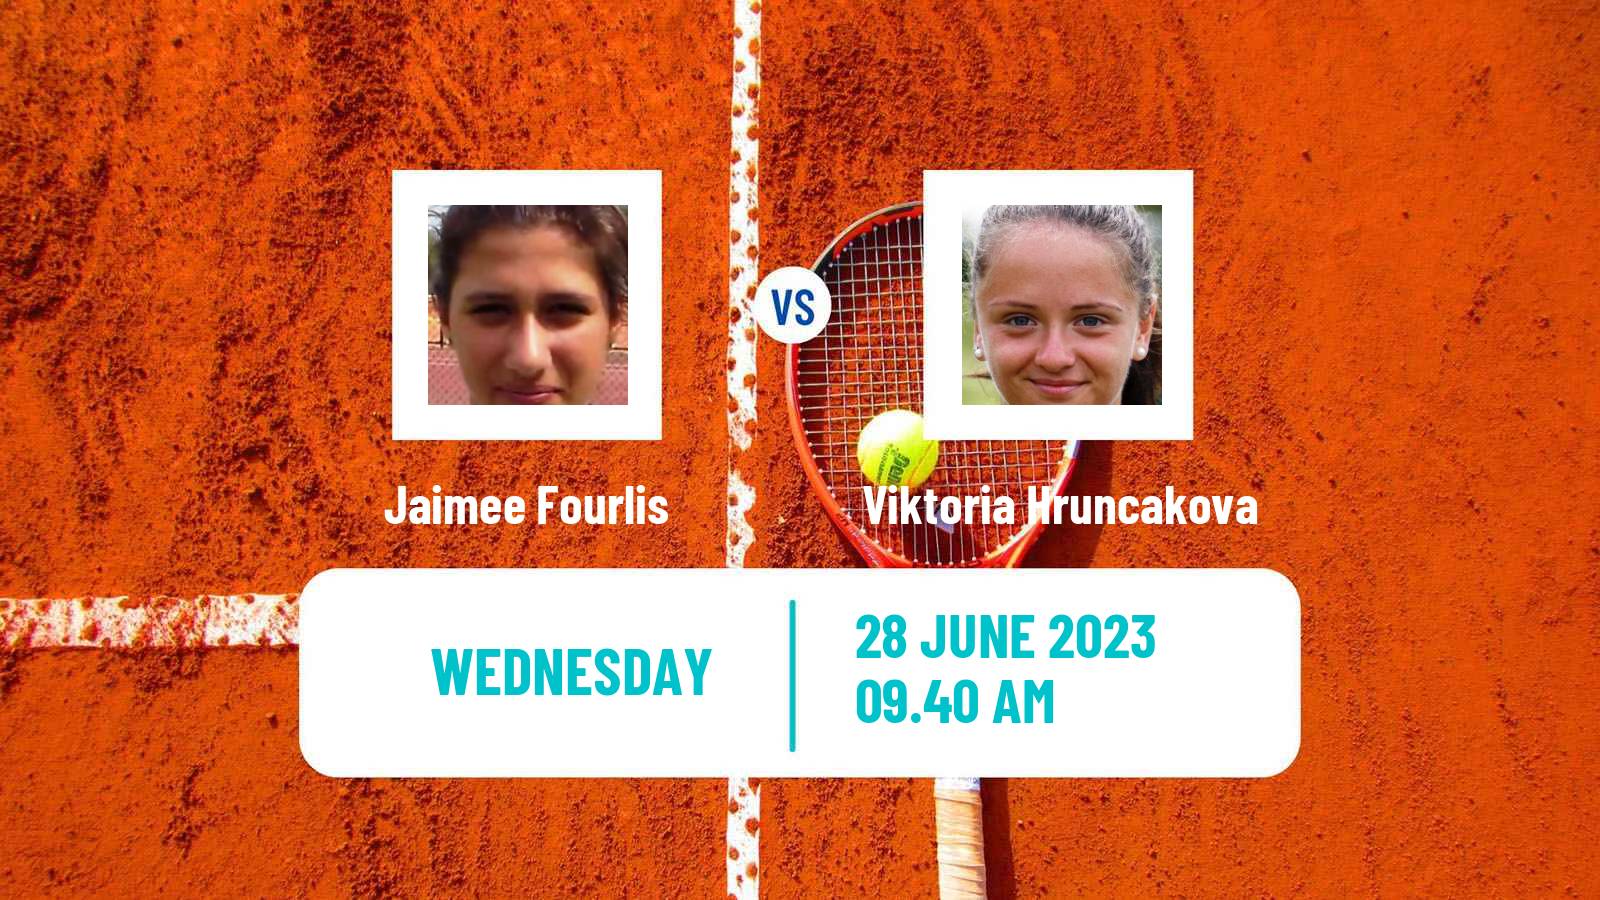 Tennis WTA Wimbledon Jaimee Fourlis - Viktoria Hruncakova